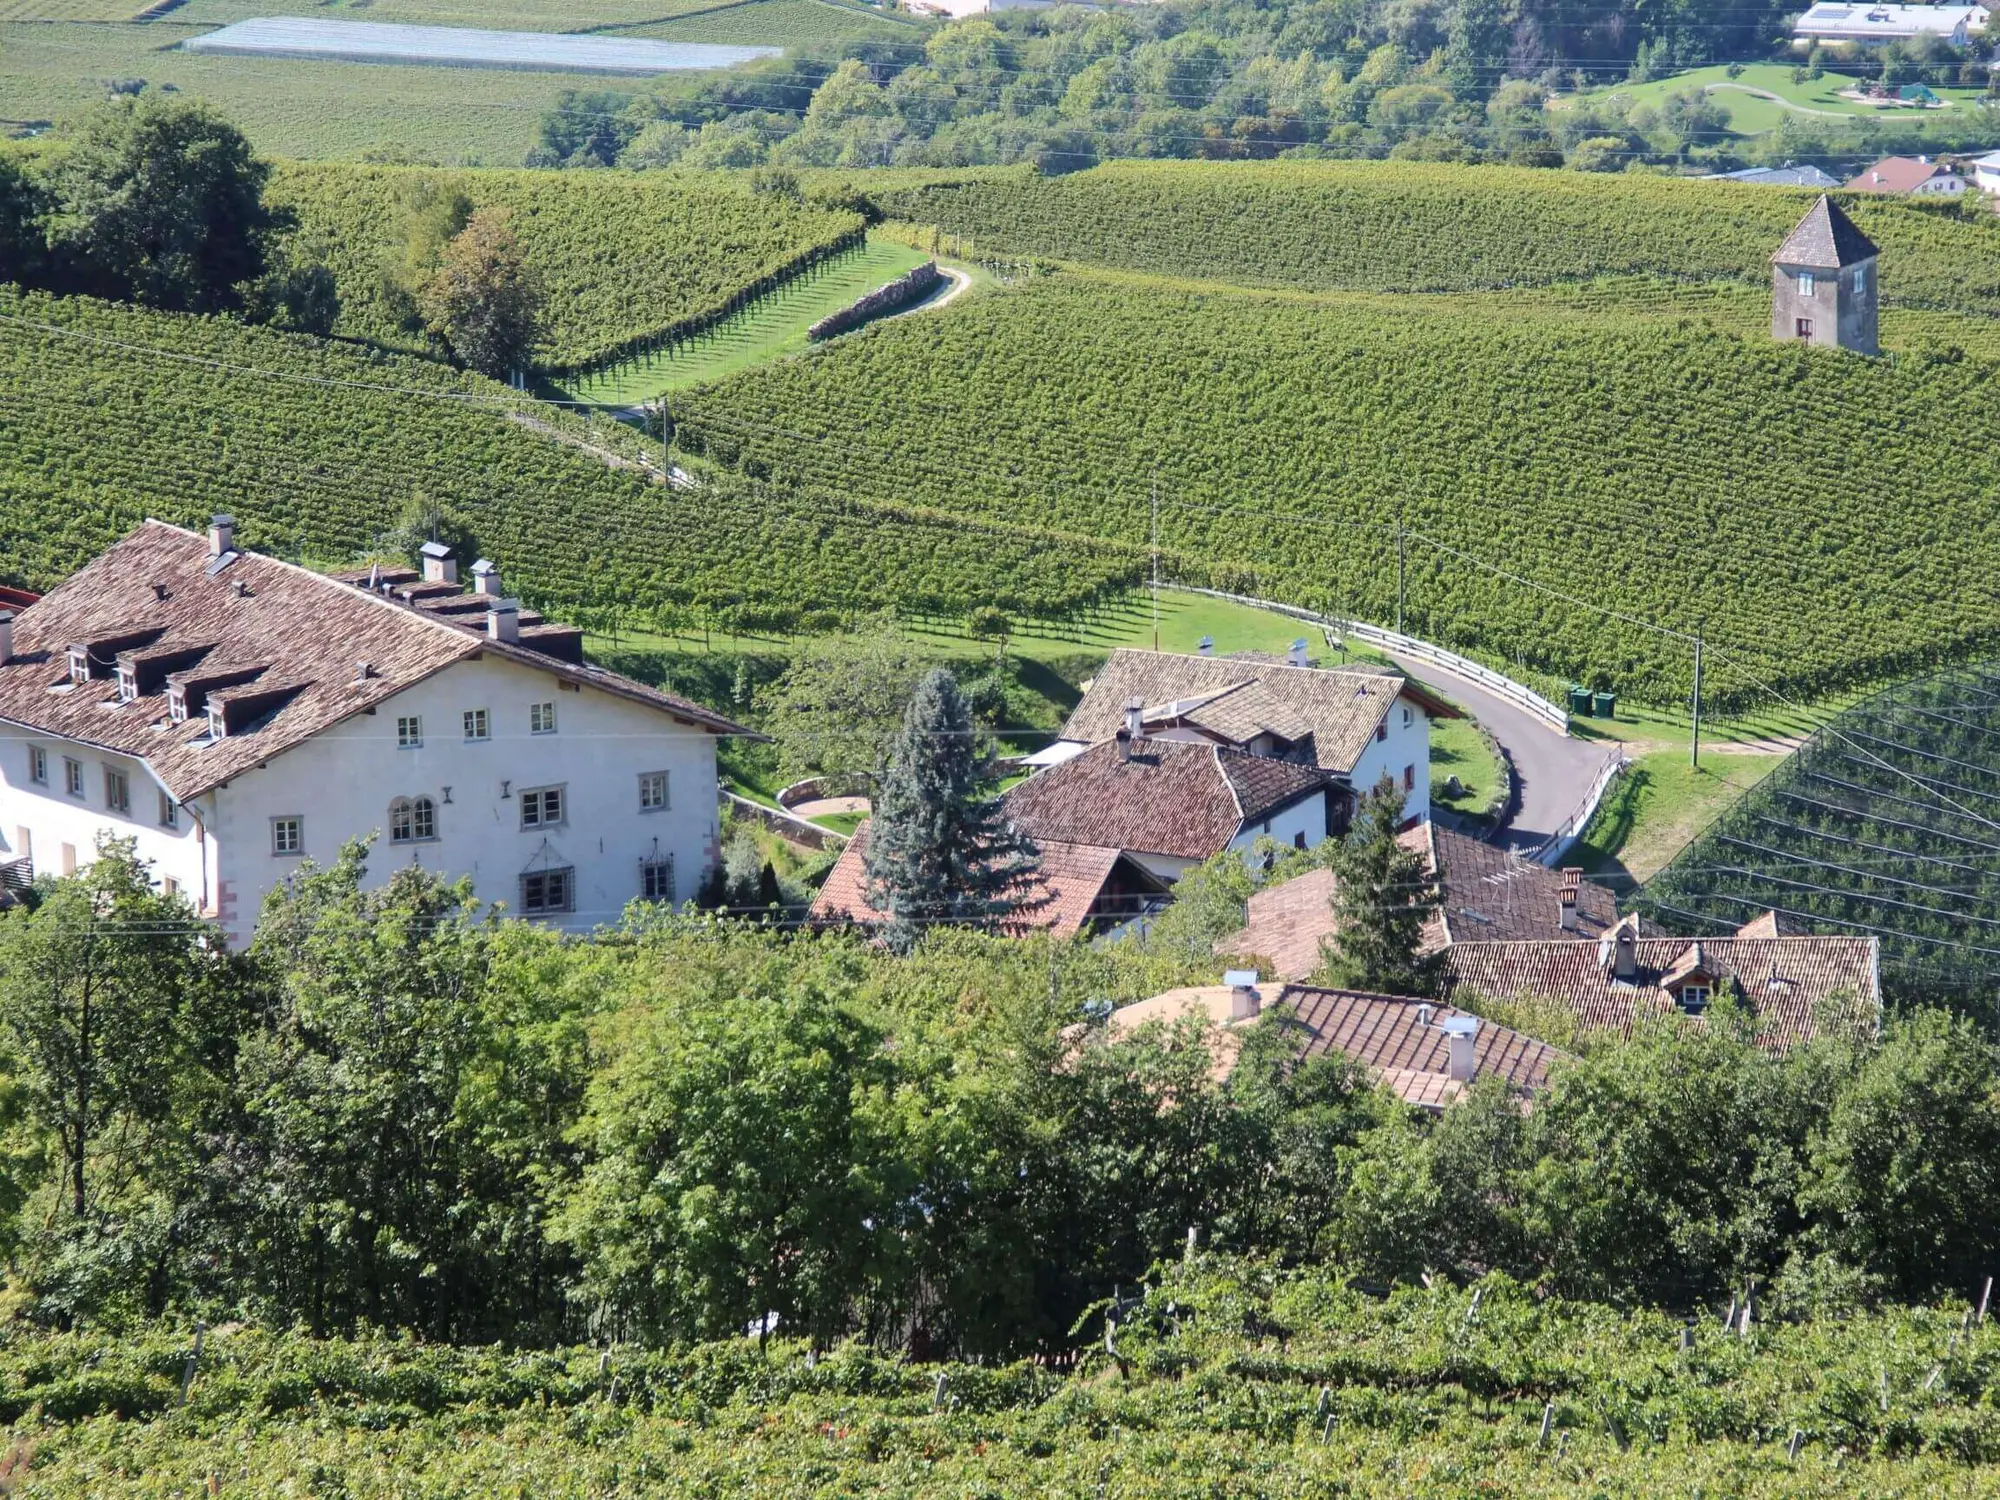 Blick von oben auf einen Weiler und die Weingärten des Weinguts RADOIN 1560 in Südtirol (c) Foto Weingut RADOIN 1560